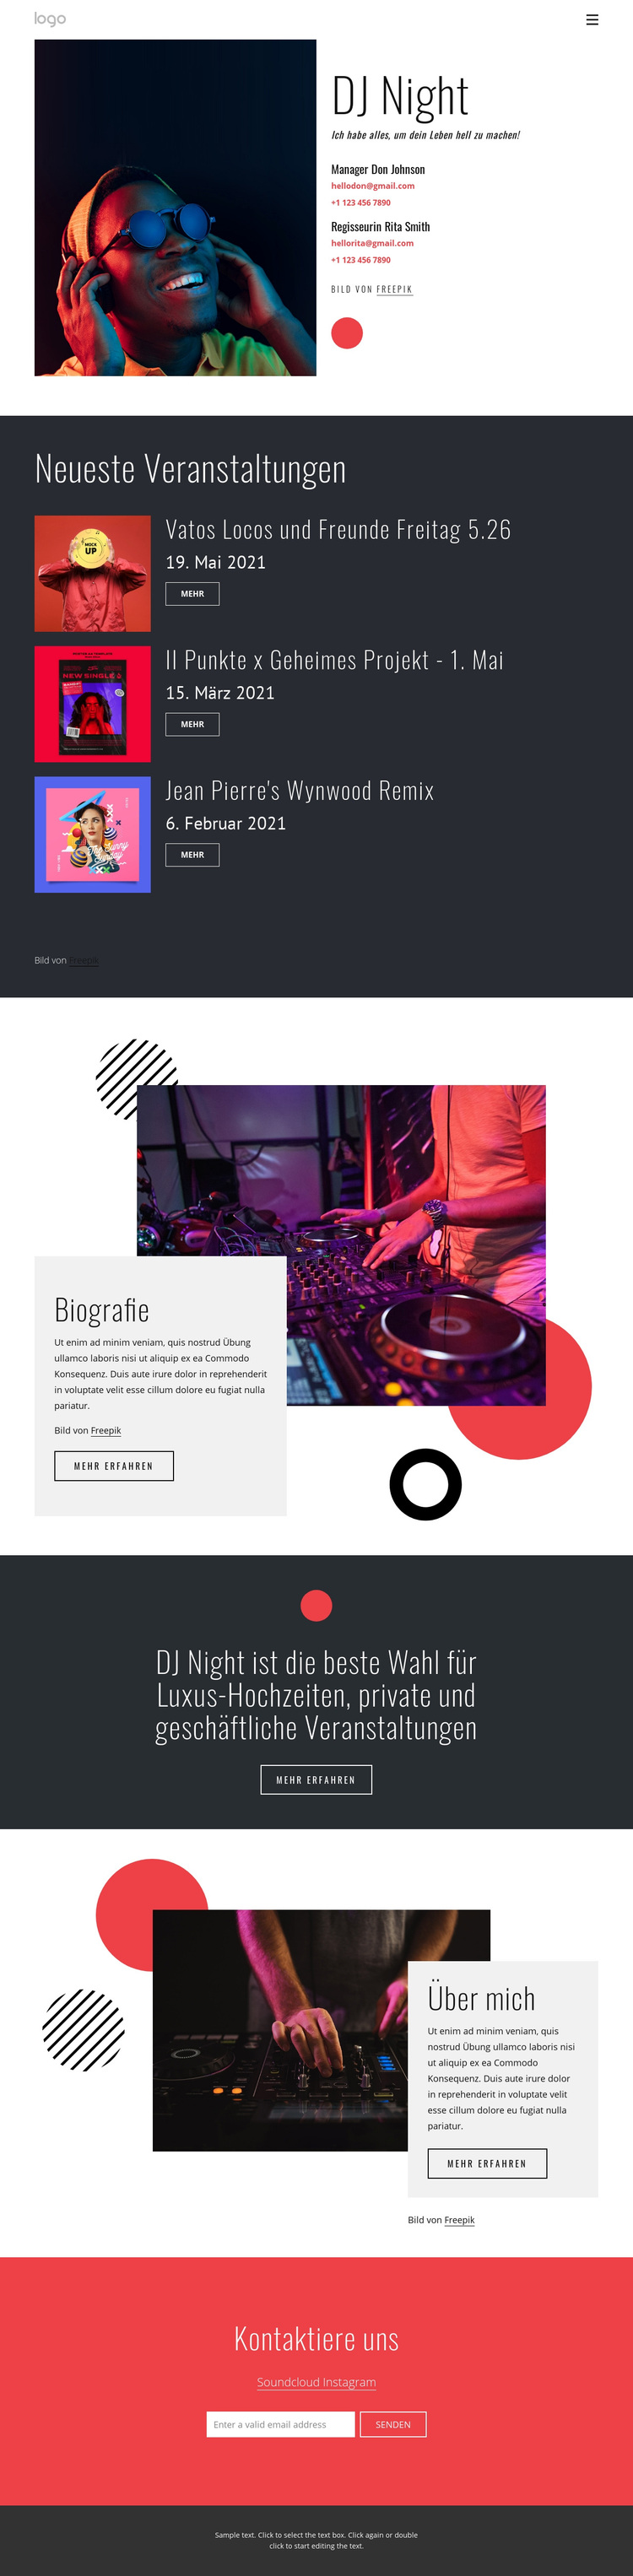 DJ Nacht Website WordPress-Theme